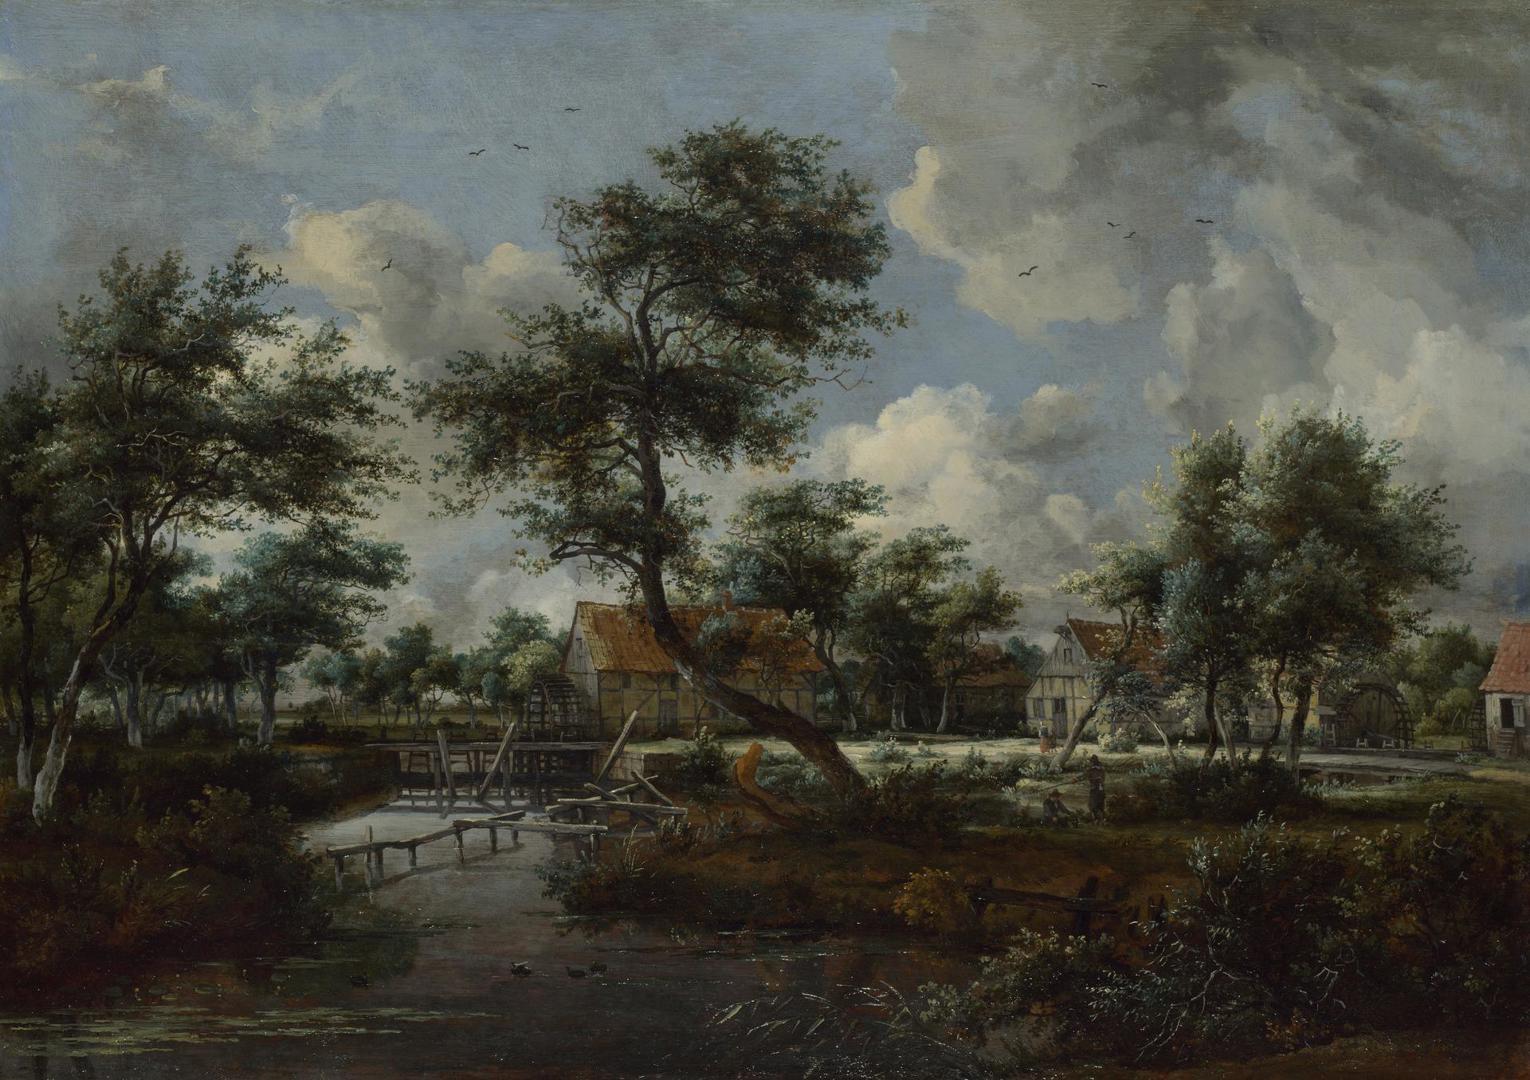 The Watermills at Singraven near Denekamp by Meindert Hobbema